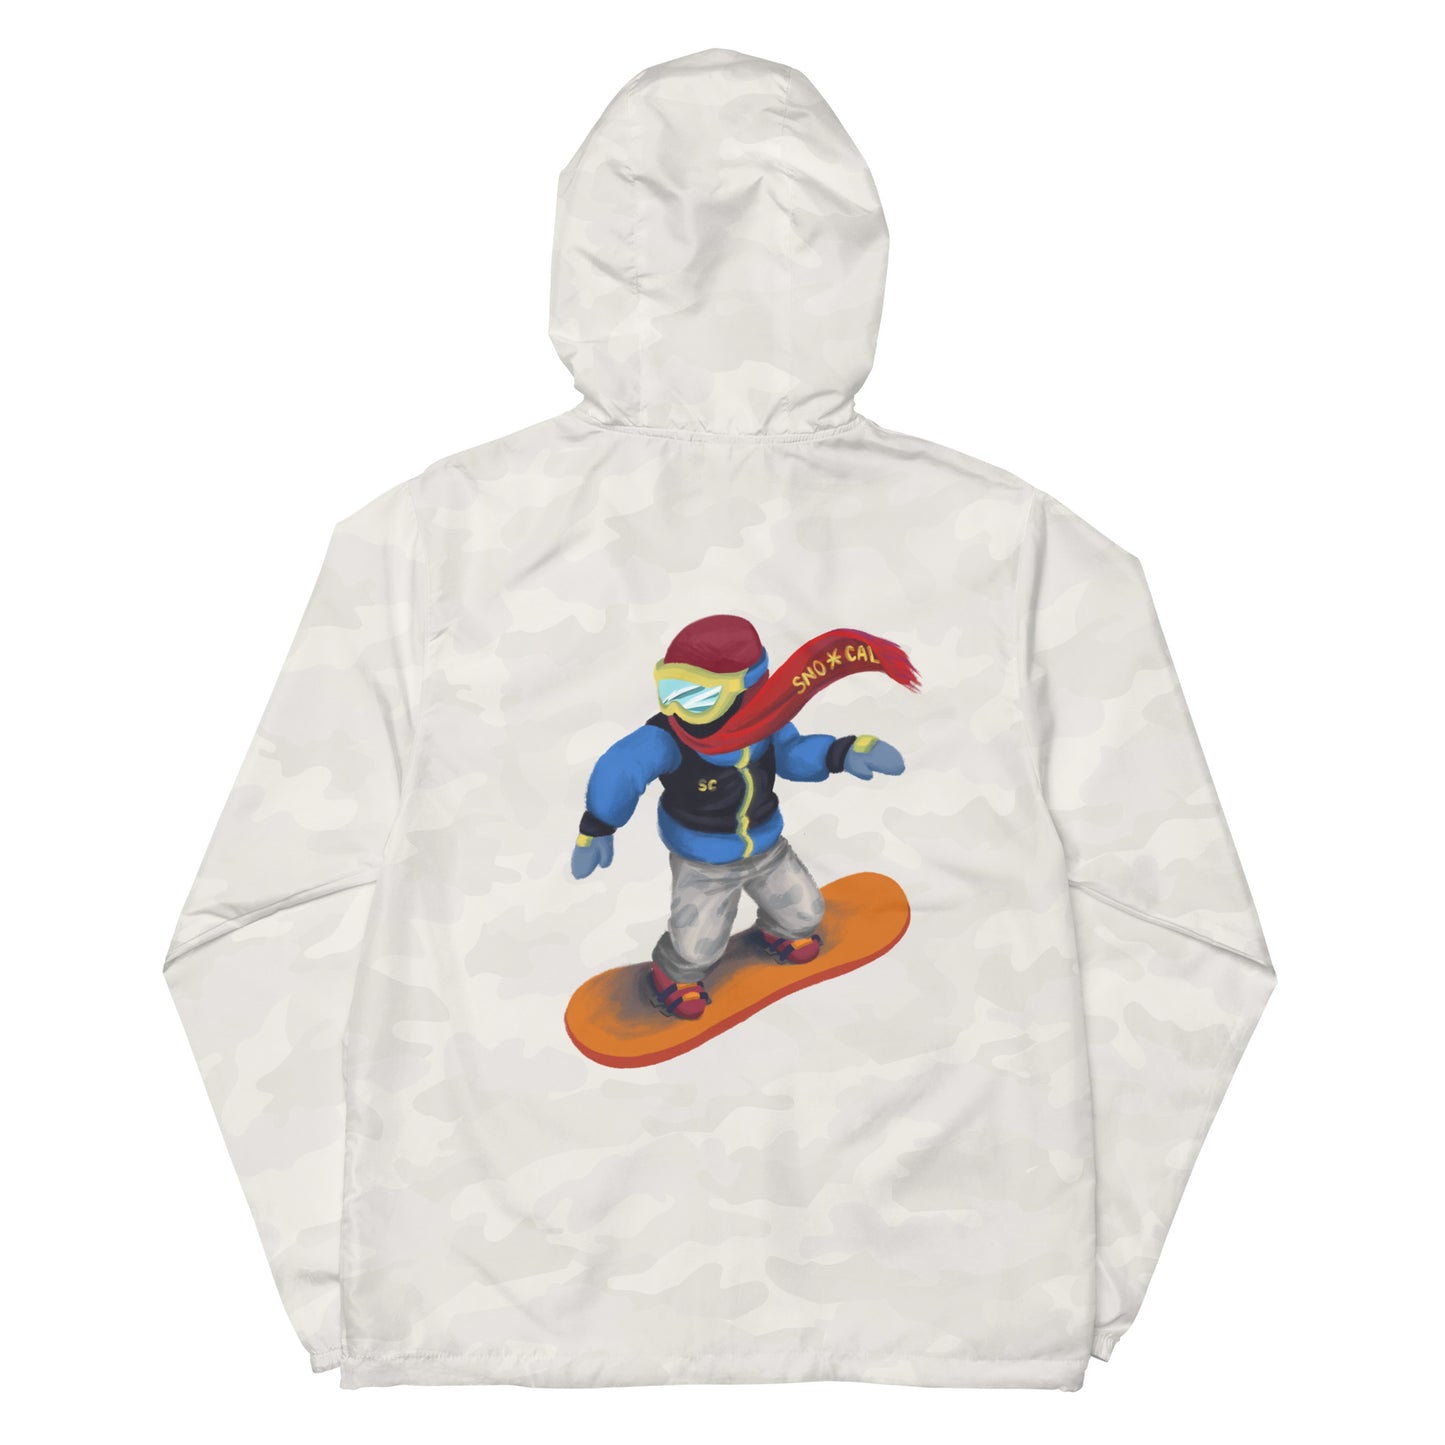 snowboard emoji hoodie windbreaker